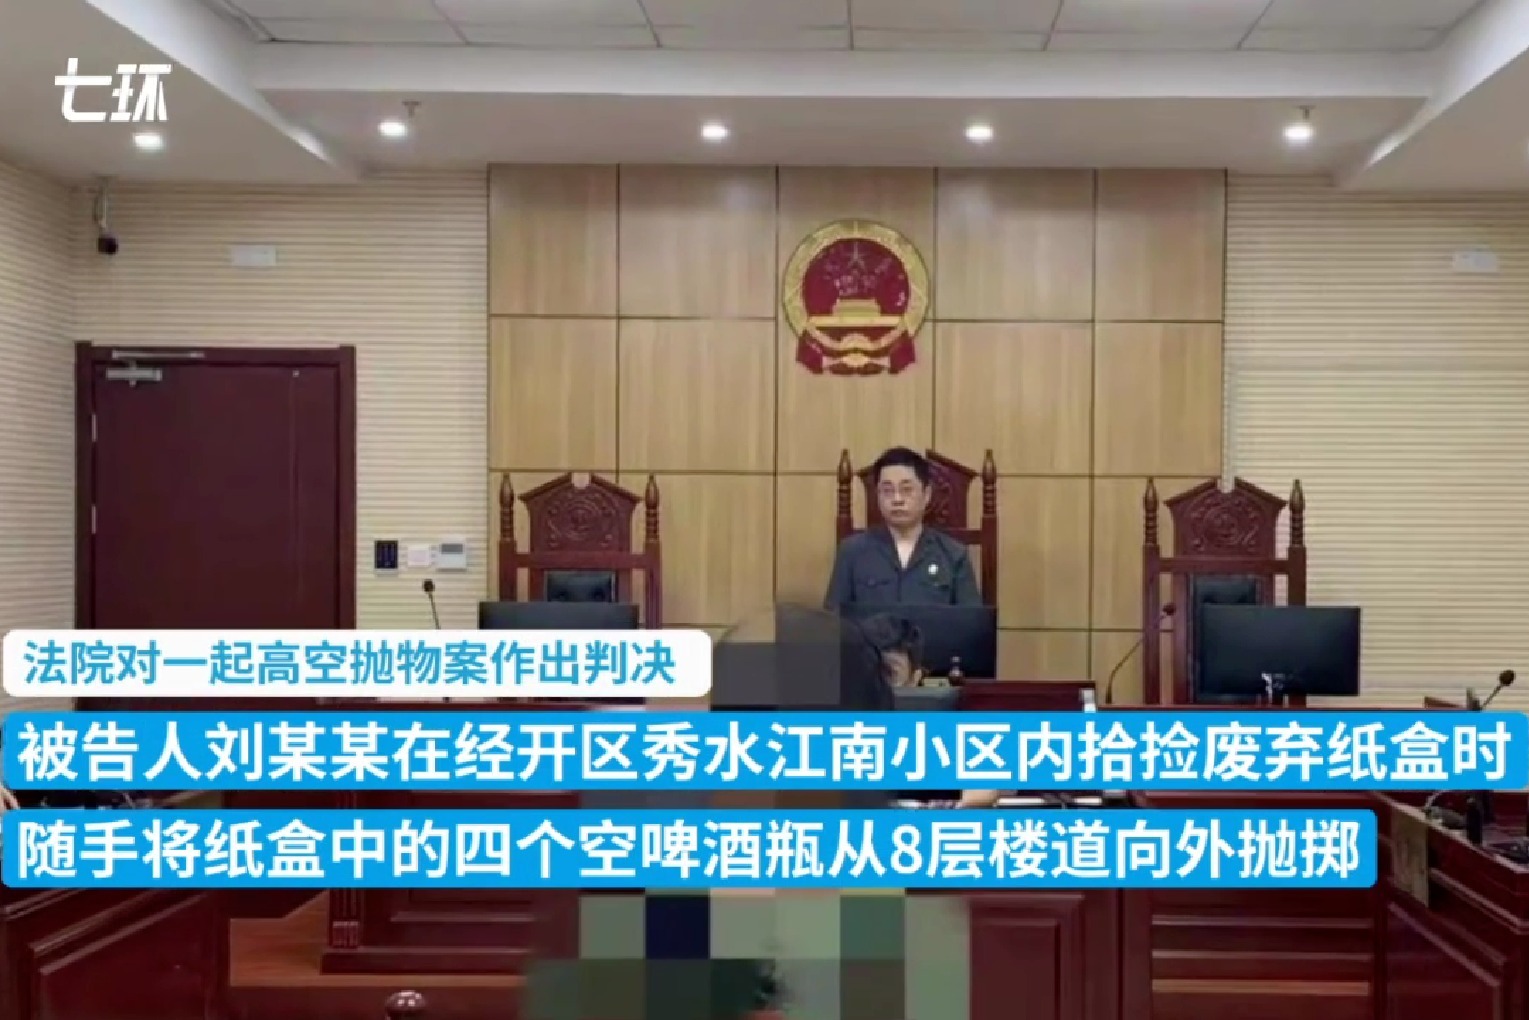 芜湖一男子从8楼扔下4个啤酒瓶 被判拘役四个月缓刑六个月